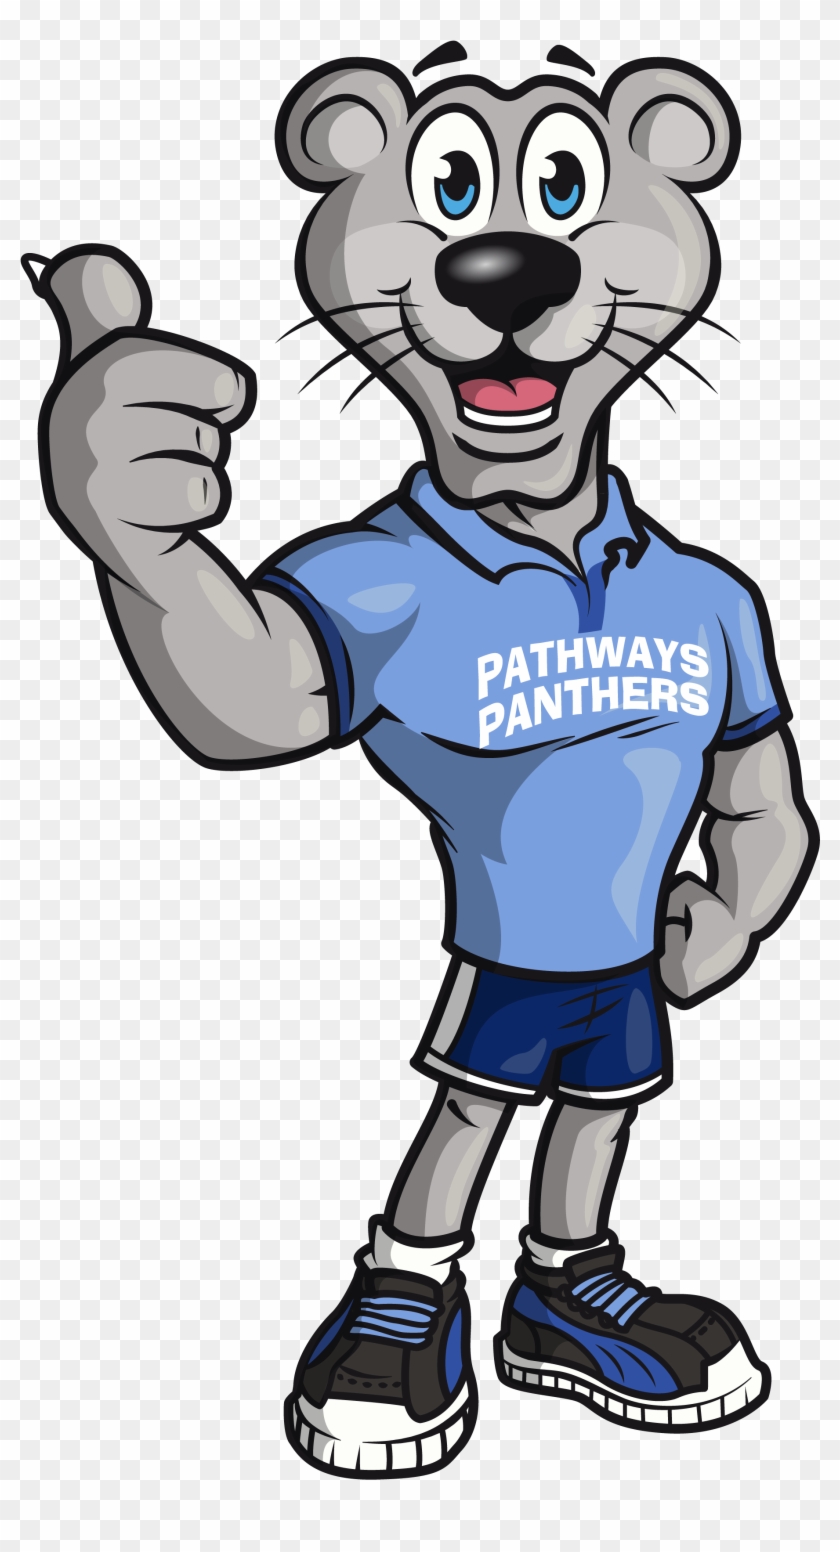 Pathways Panther - Pathways Panthers #1154976